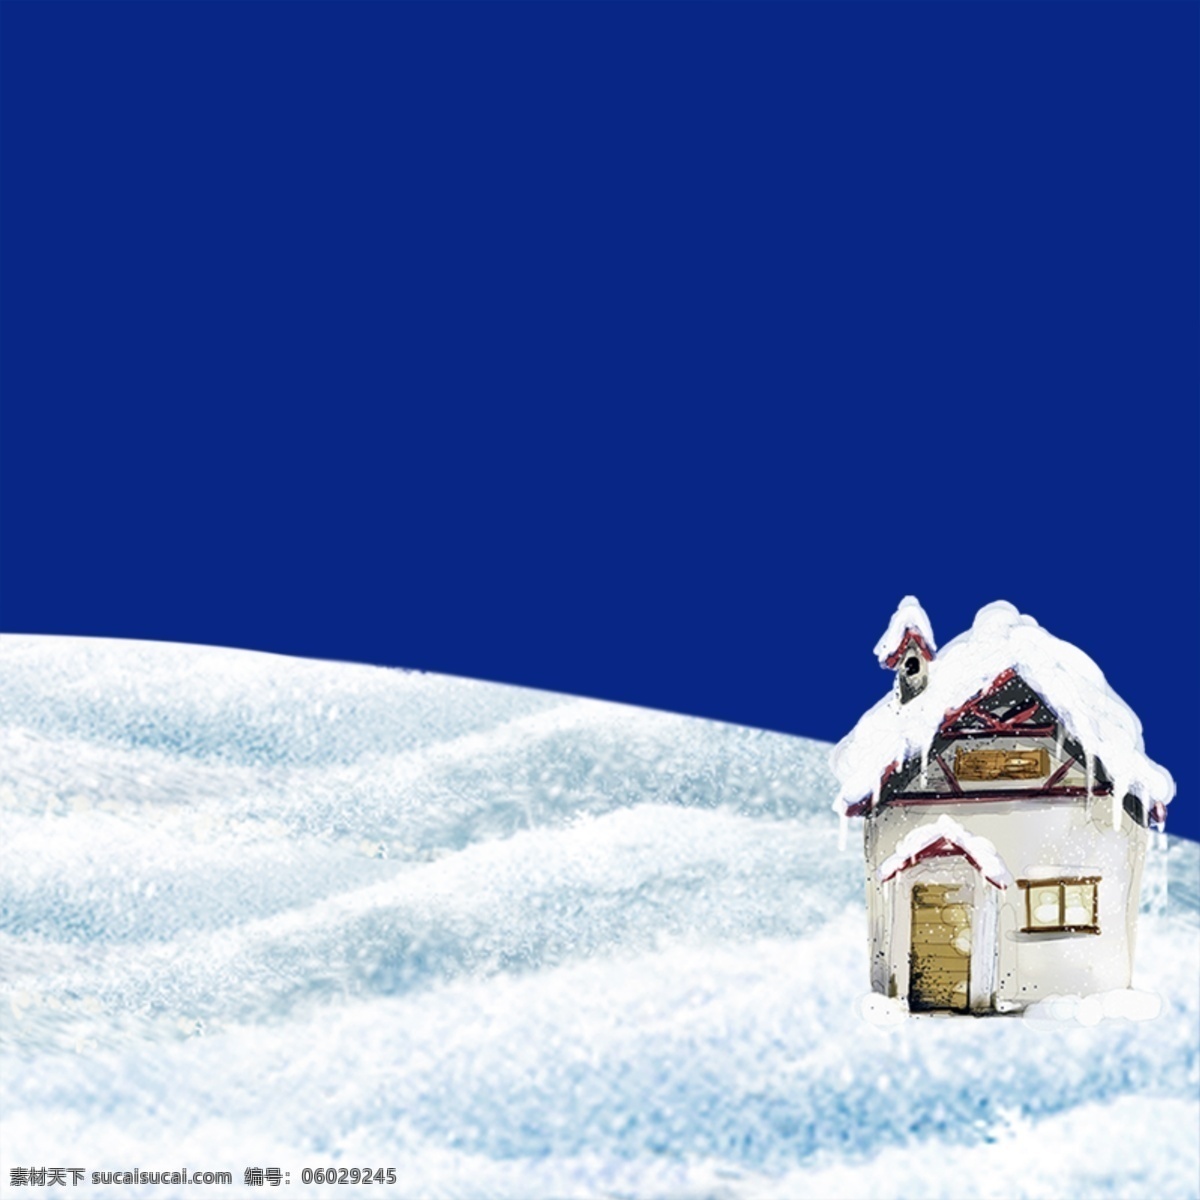 冬季背景 冬季插画 冬天 广告设计模板 源文件 冬季 氛围 蓝色